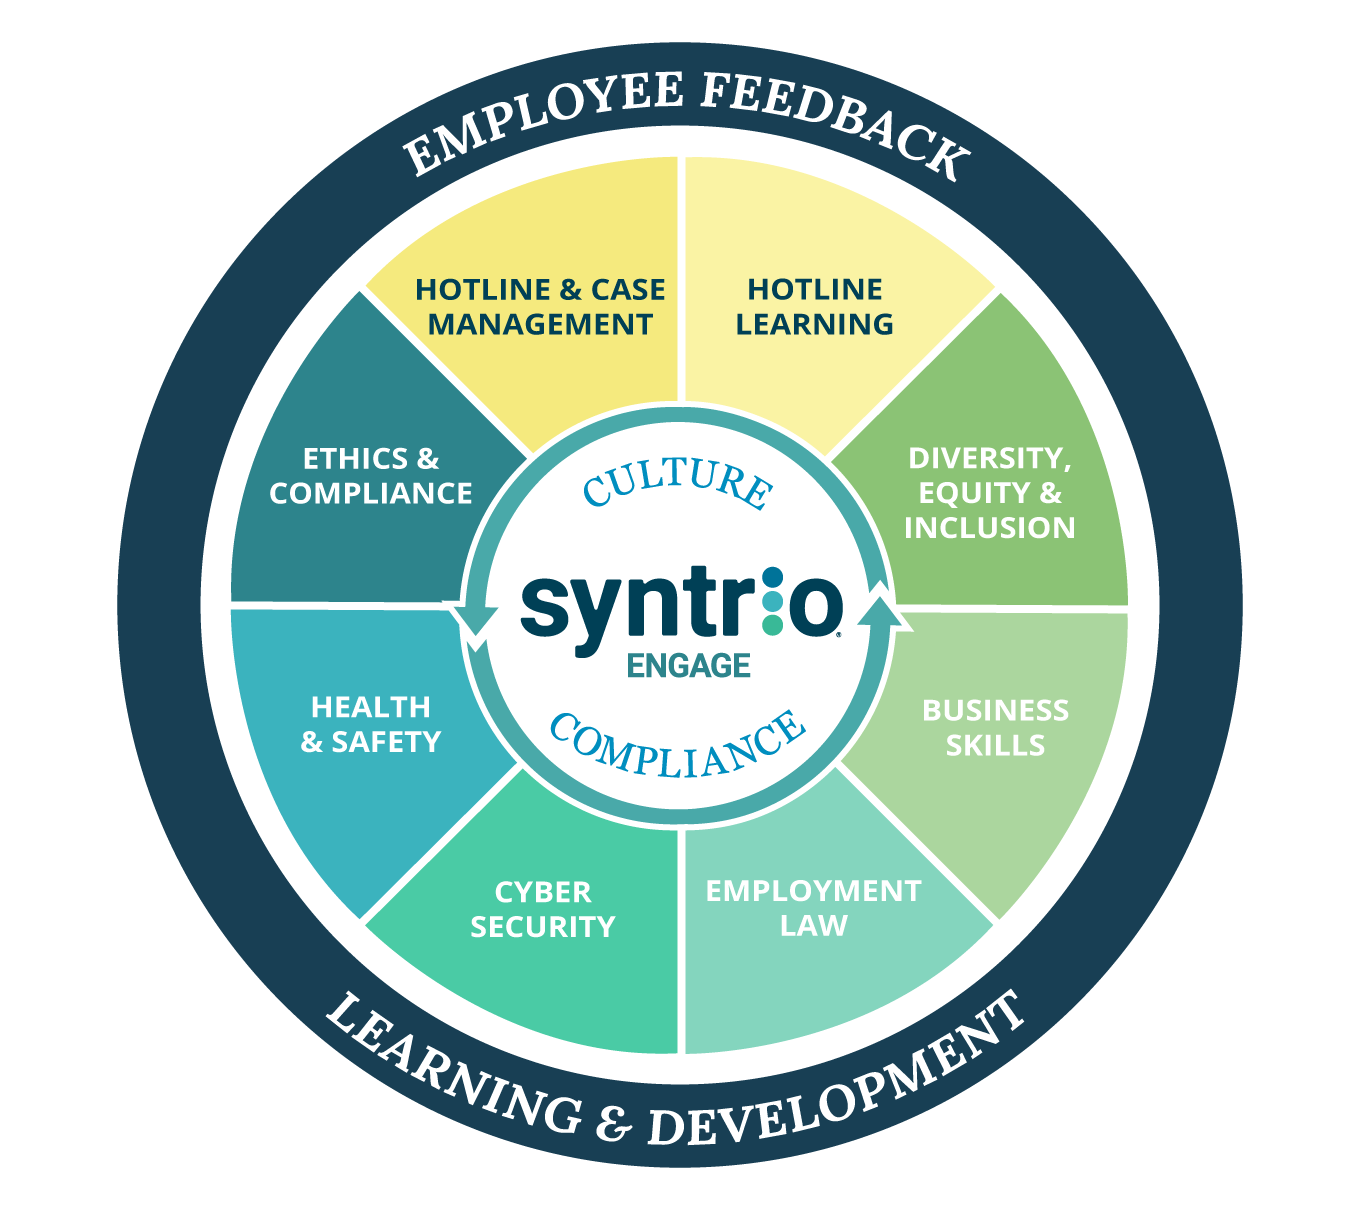 Syntrio Employee Feedback Apprentissage et développement - Éthique et conformité